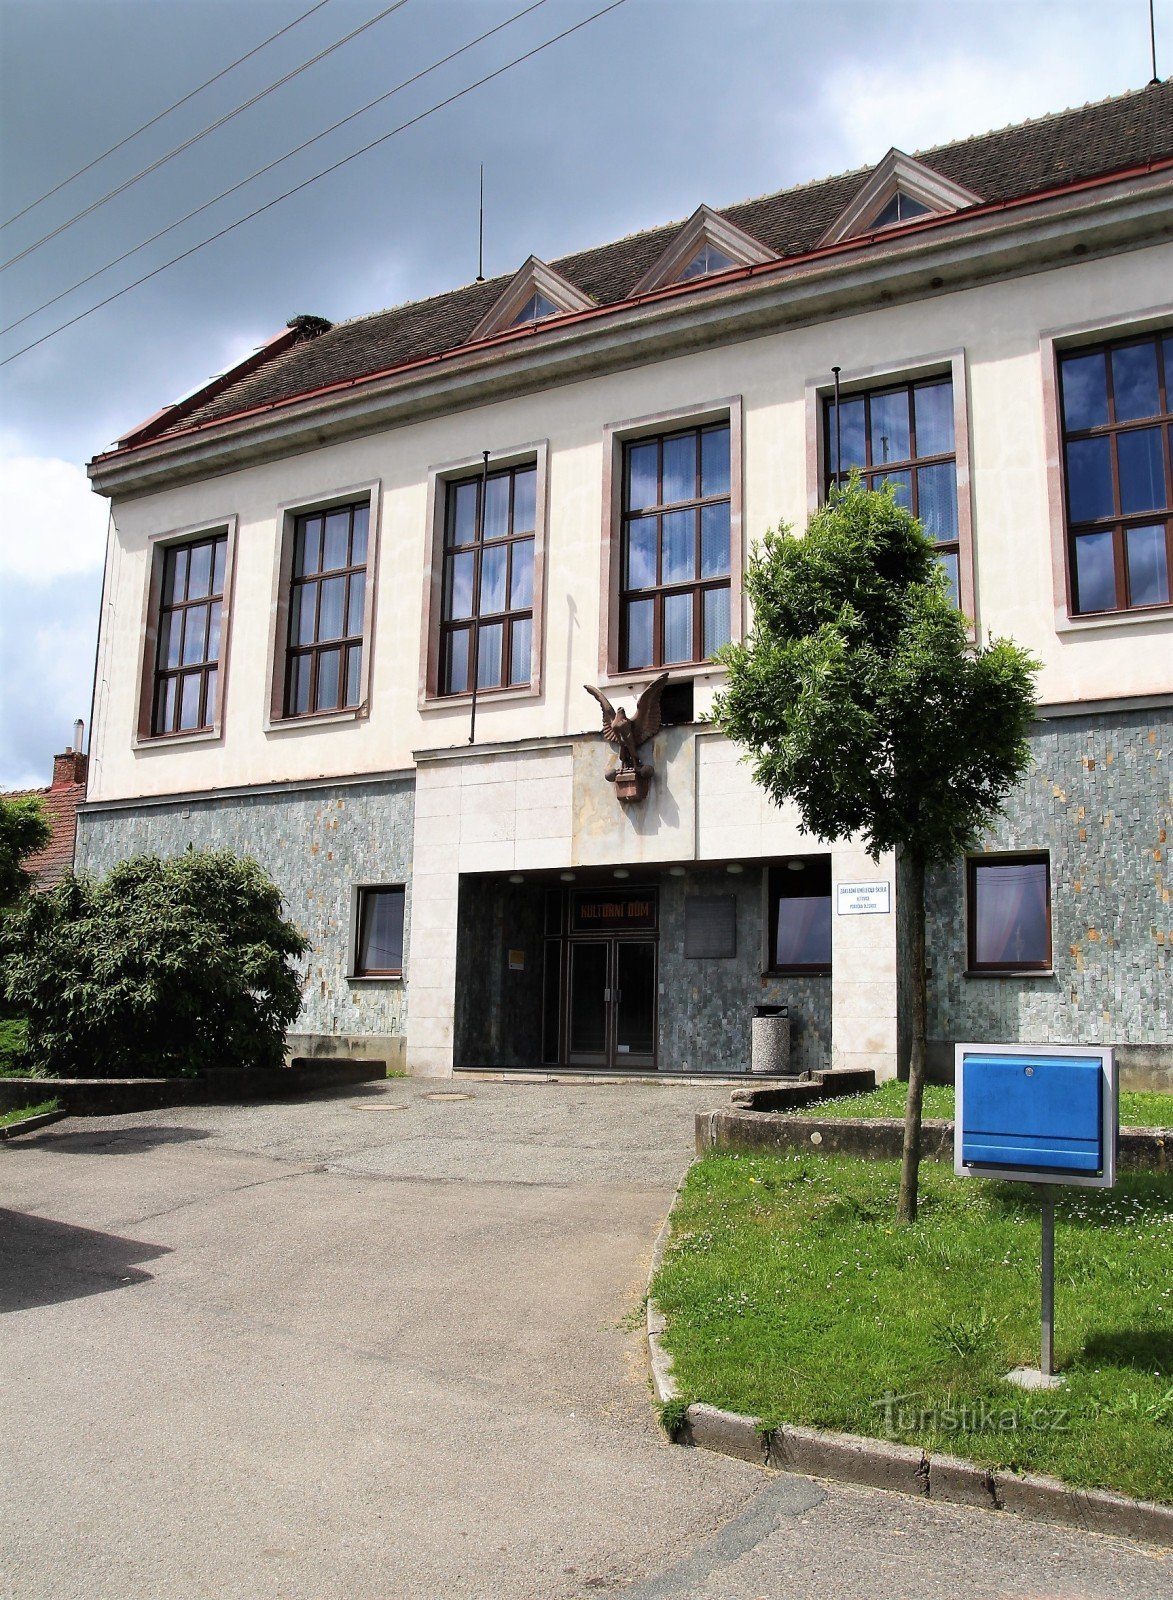 Olešnice - Kultúrház - solymászat